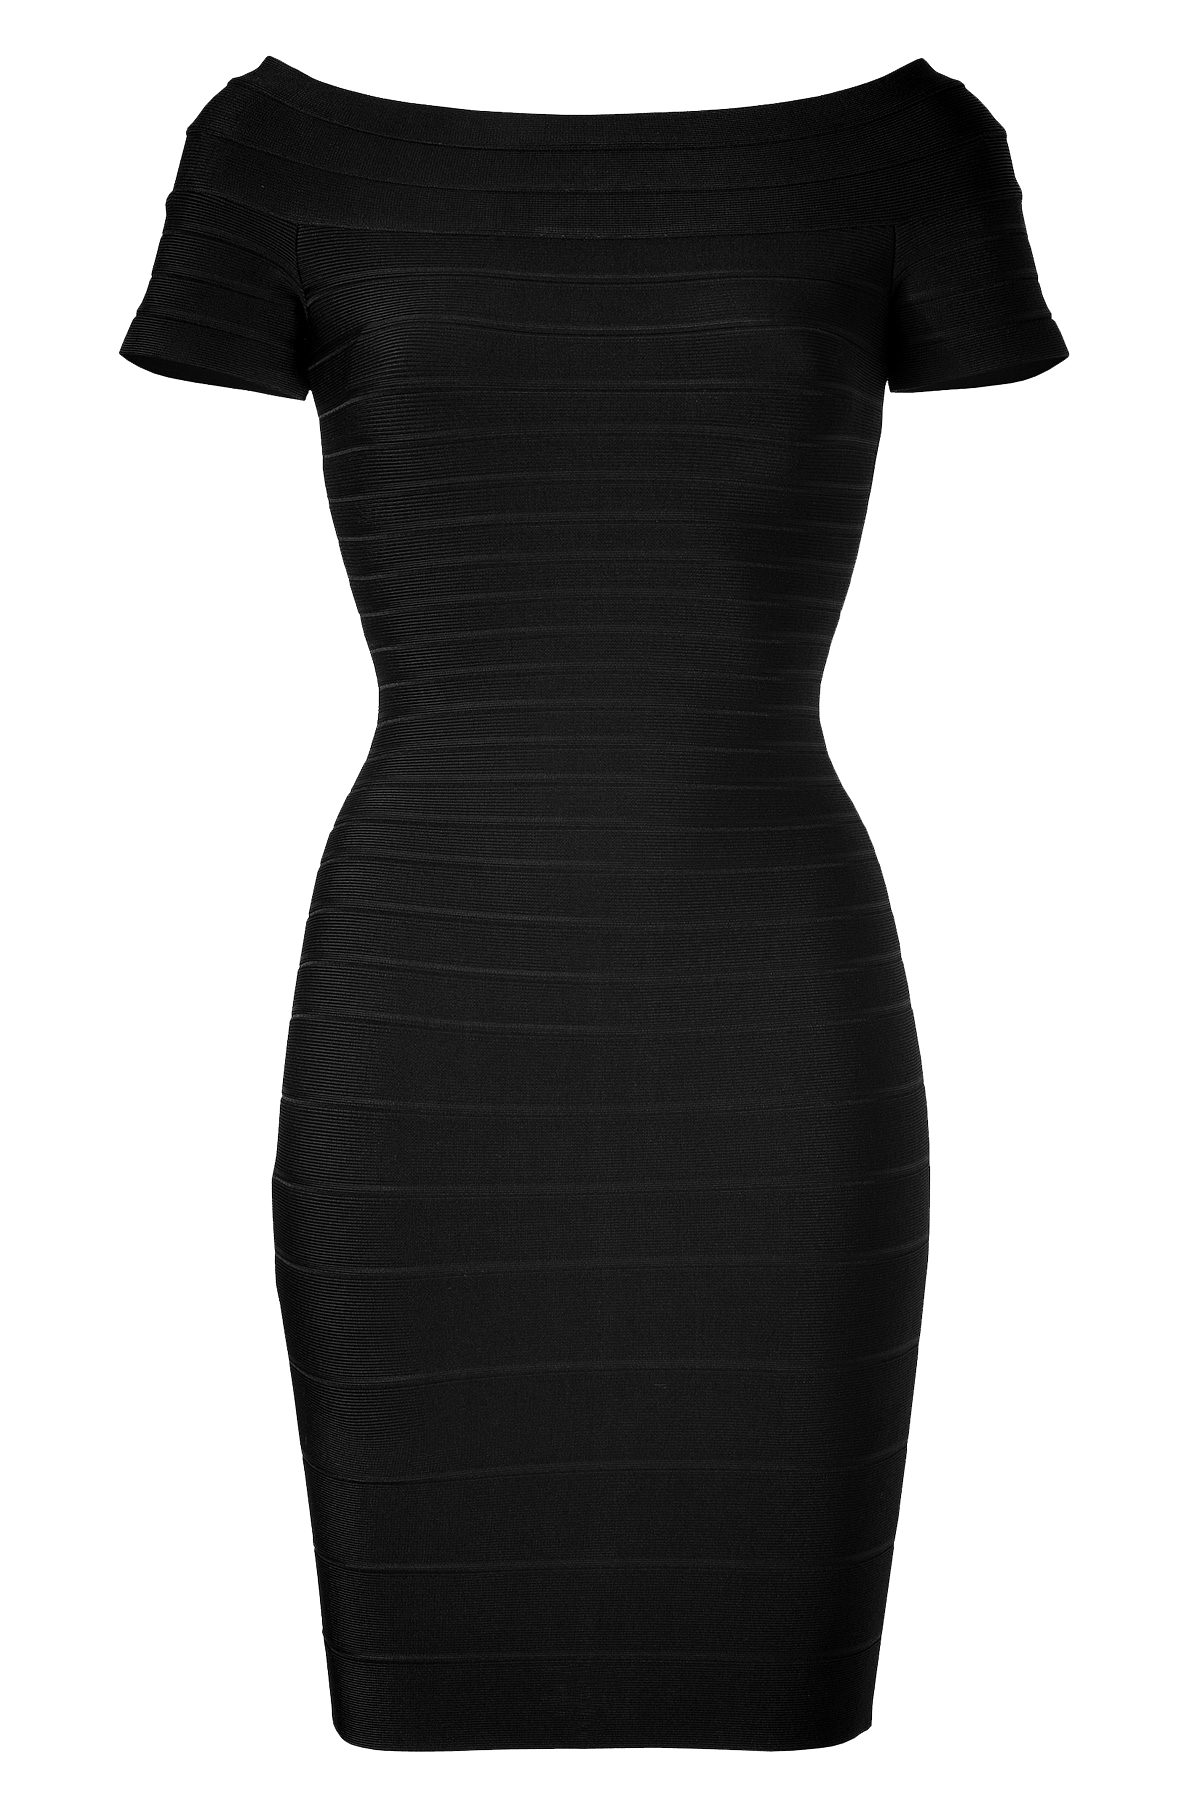 Herve Leger Black Off-the-Shoulder Bandage Dress